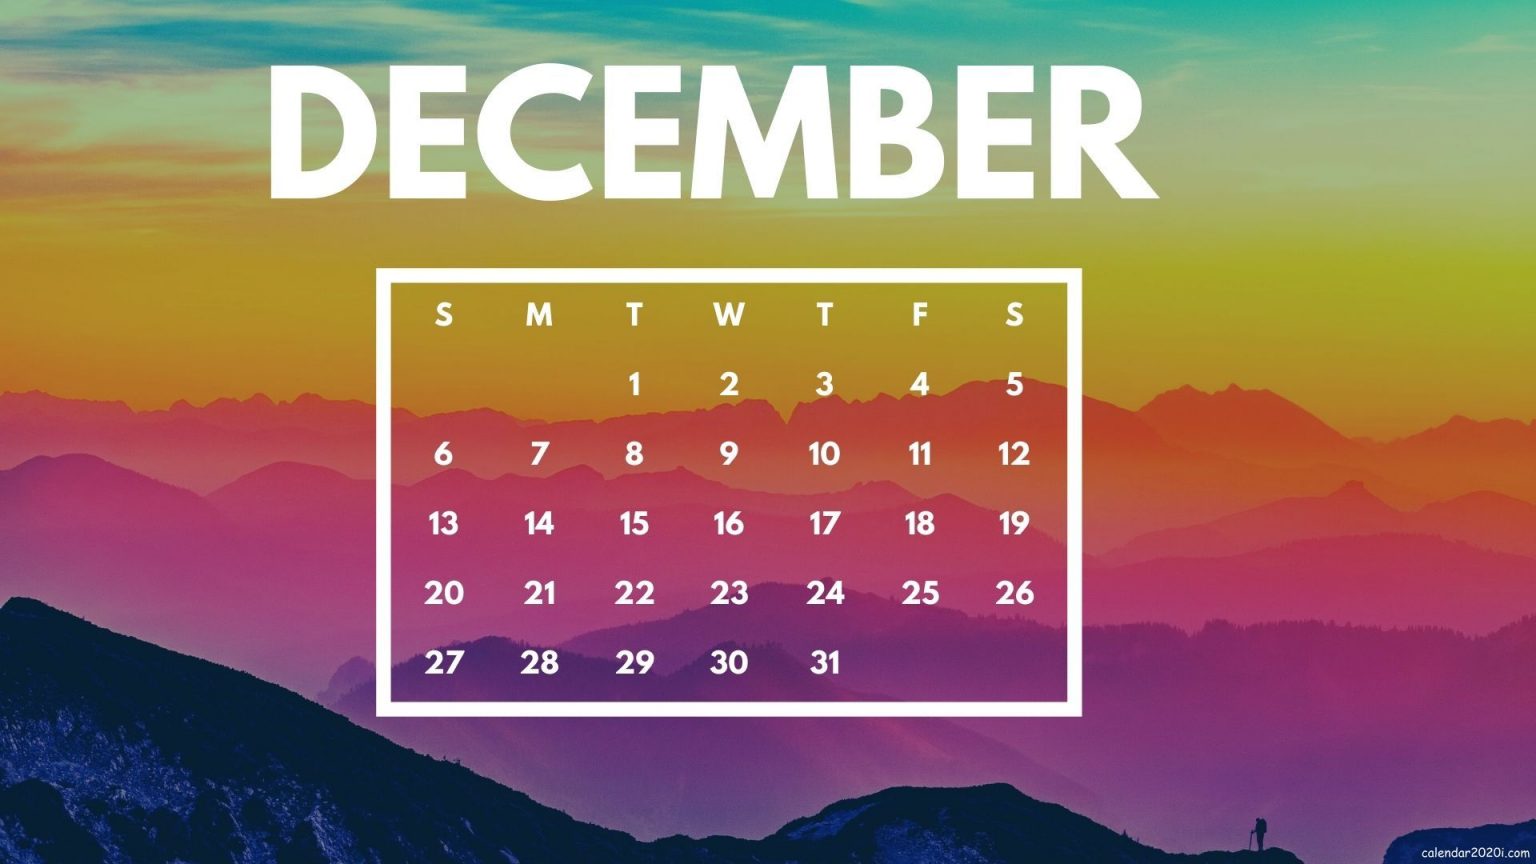 December 2020 Calendar Wallpaper